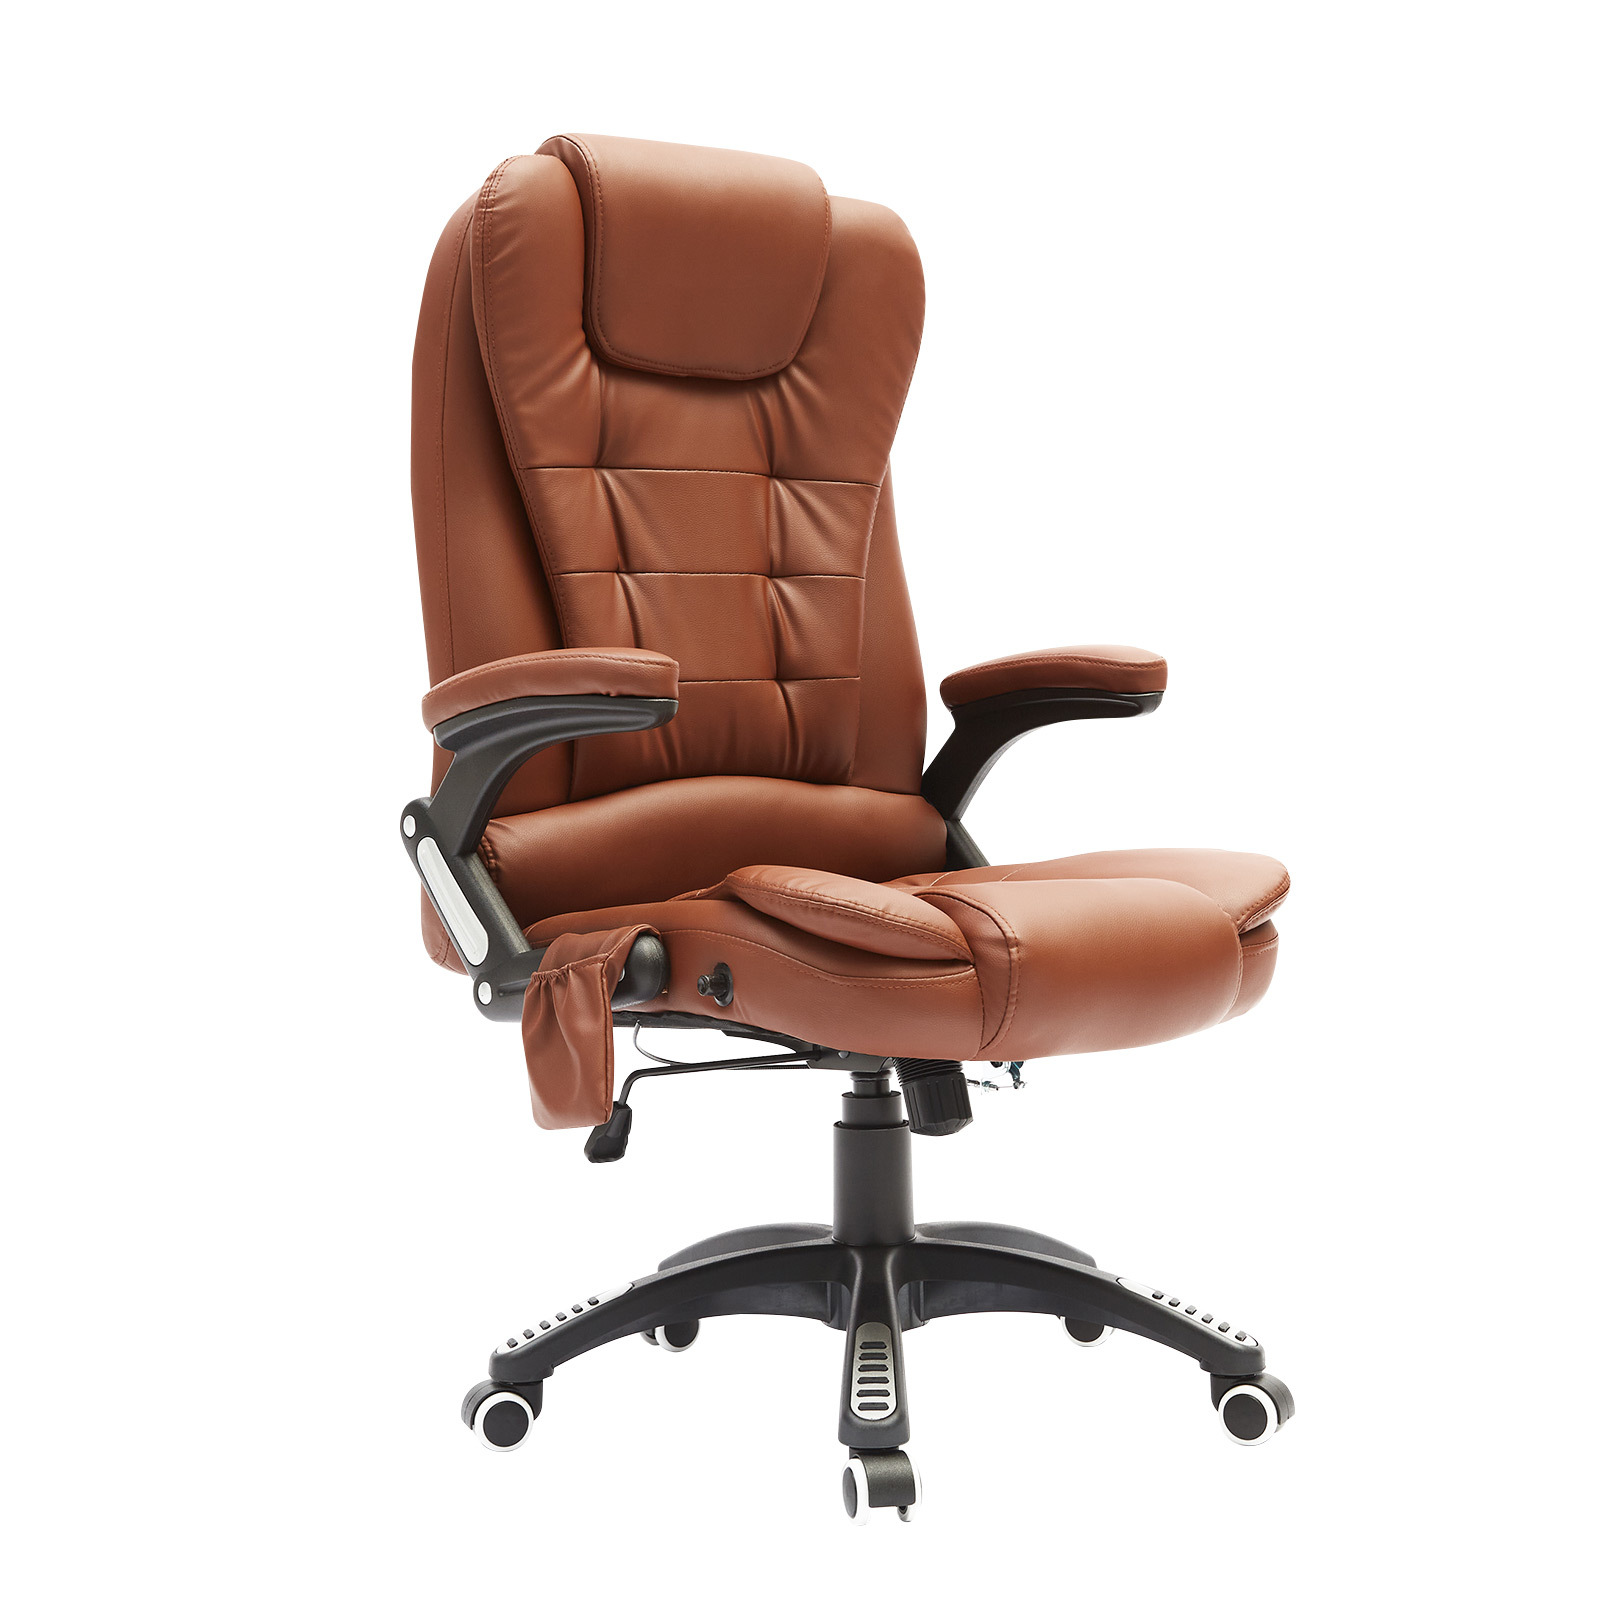 Massage Office Chair 8 Points - ESPRESSO